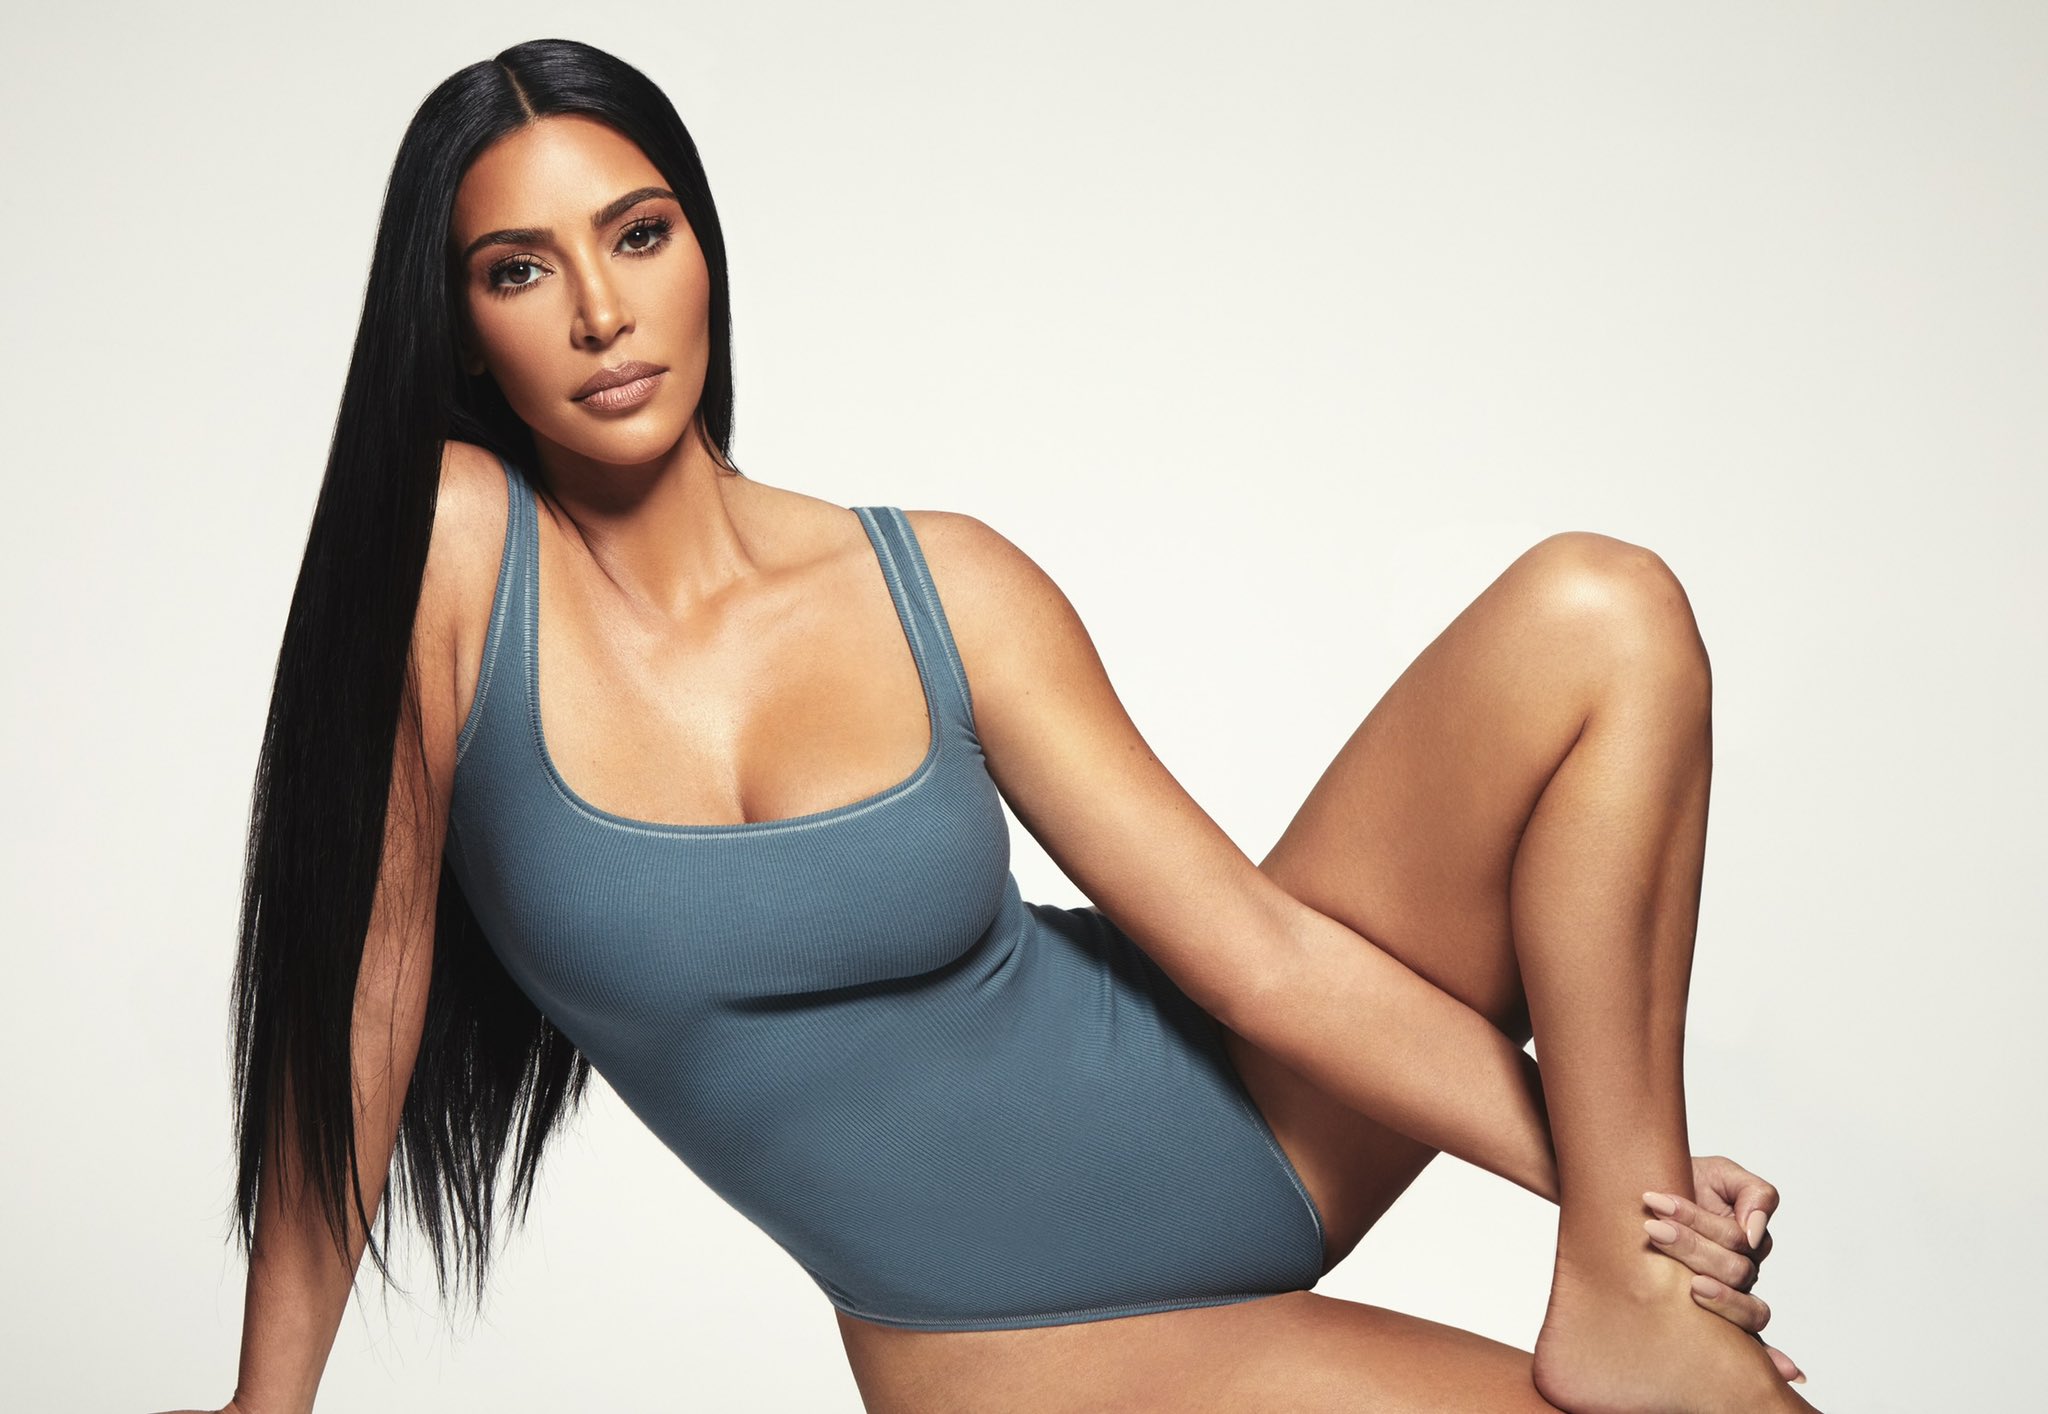 Kim Kardashian on X: New @SKIMS Cotton styles & colors are